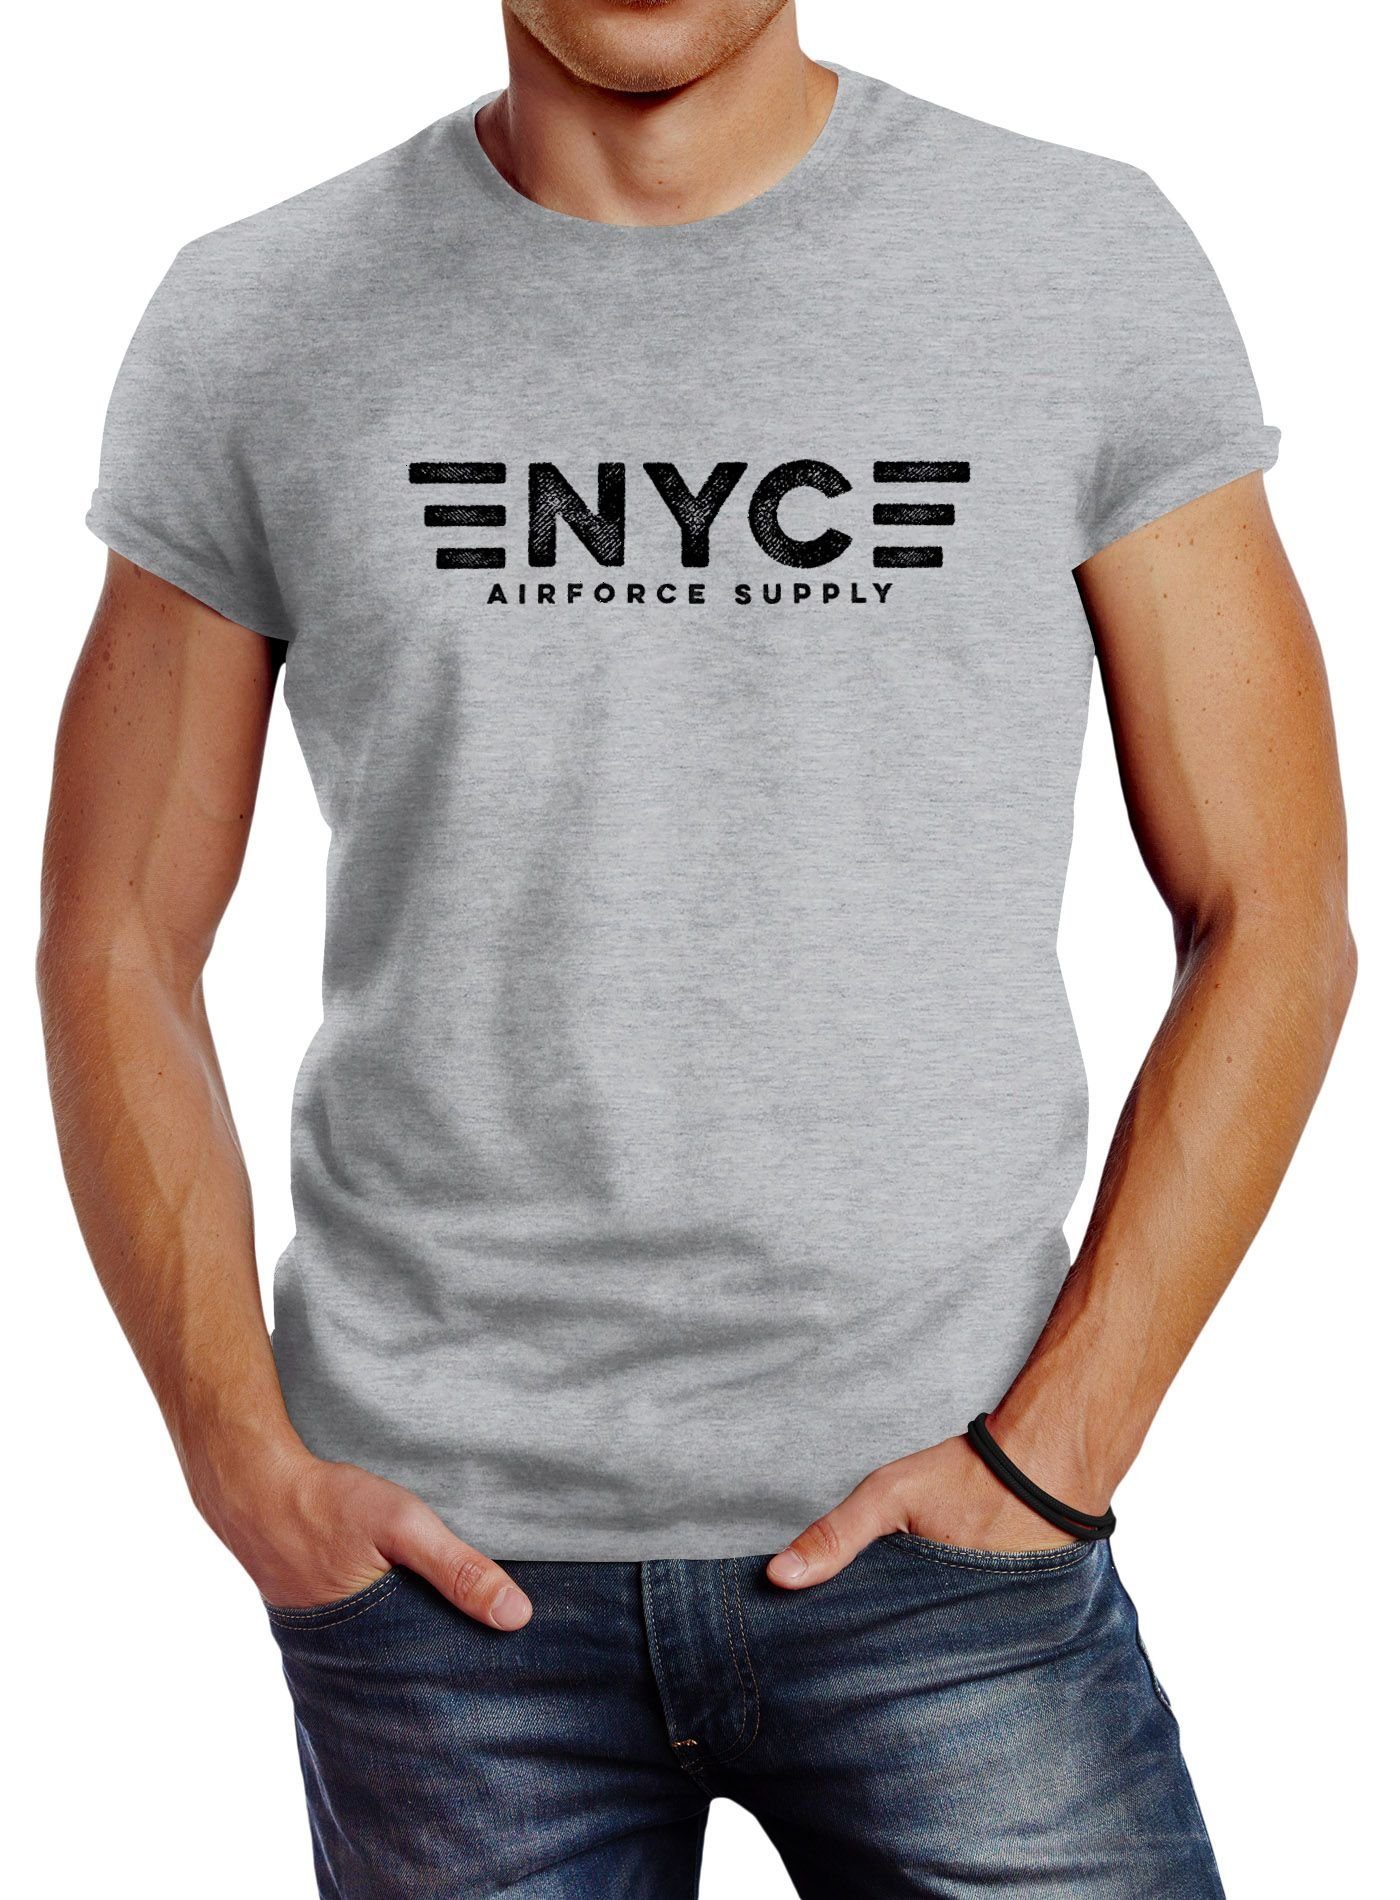 Aufdruck Print-Shirt Print NYC mit Neverless grau Supply T-Shirt Neverless® Airforce Print Army Herren New York City